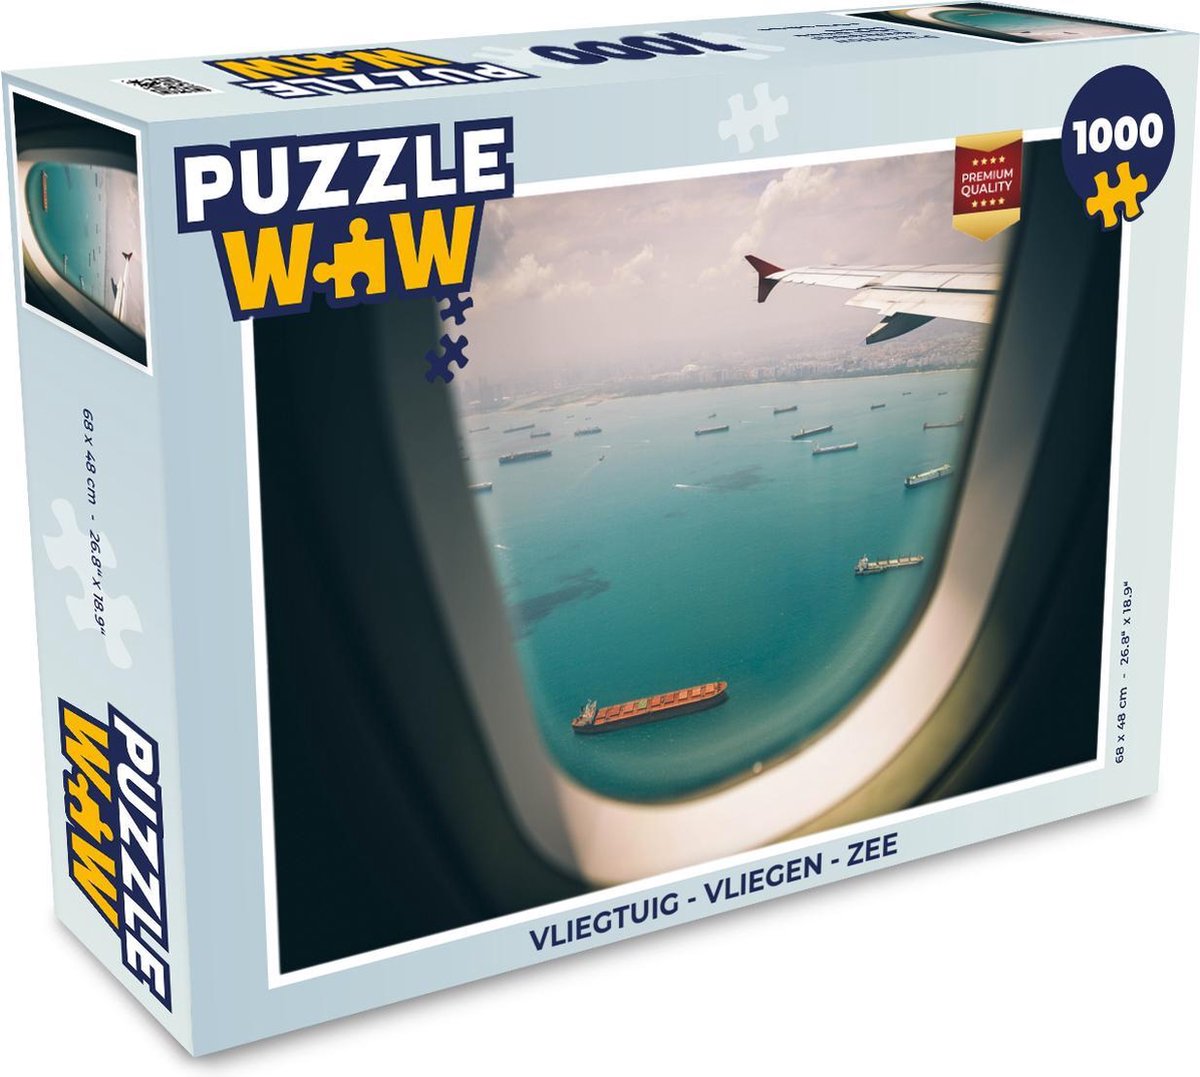 Afbeelding van product PuzzleWow  Puzzel Vliegtuig - Vliegen - Zee - Legpuzzel - Puzzel 1000 stukjes volwassenen